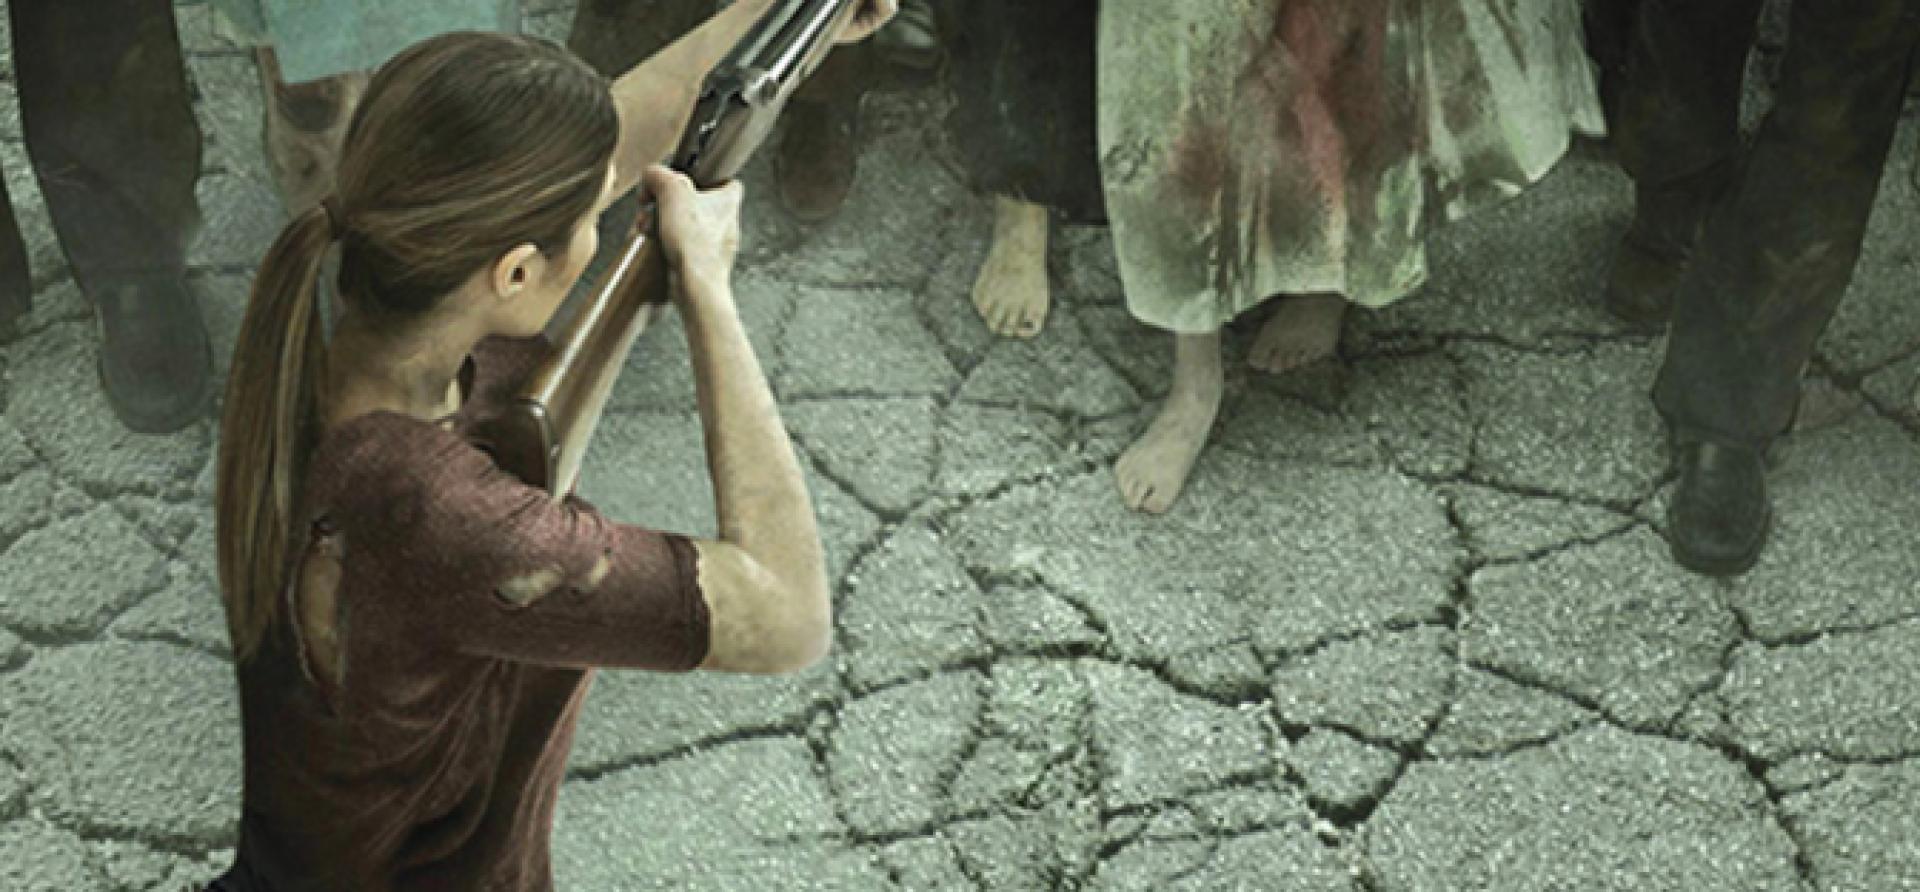 Októberben kerül a boltok polcaira a The Walking Dead: Invasion regény